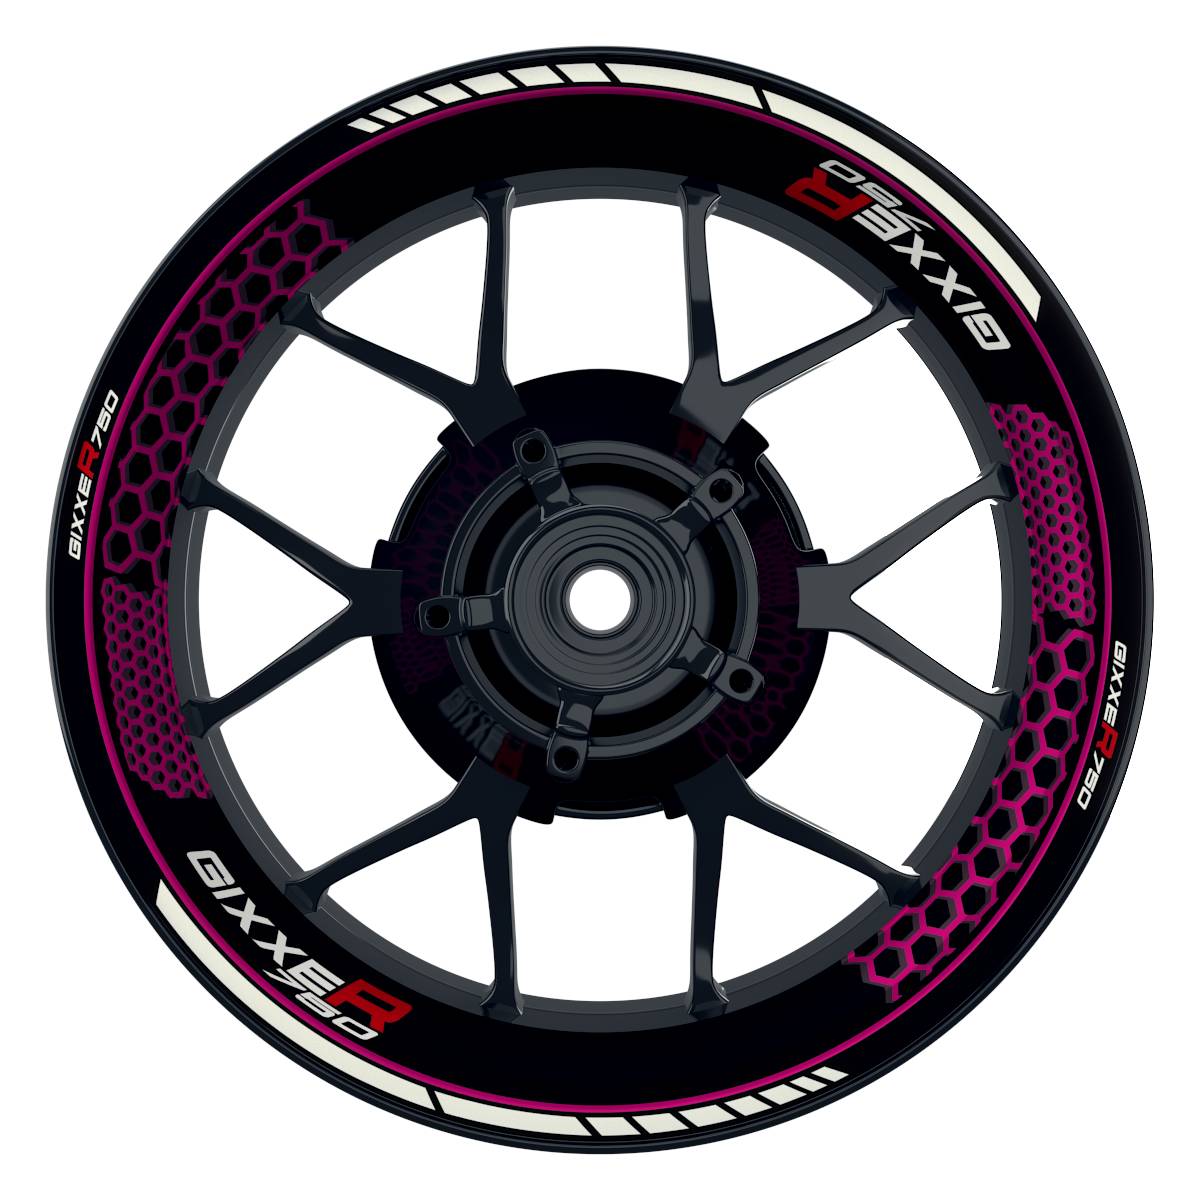 GIXXER750 Hexagon schwarz pink Wheelsticker Felgenaufkleber